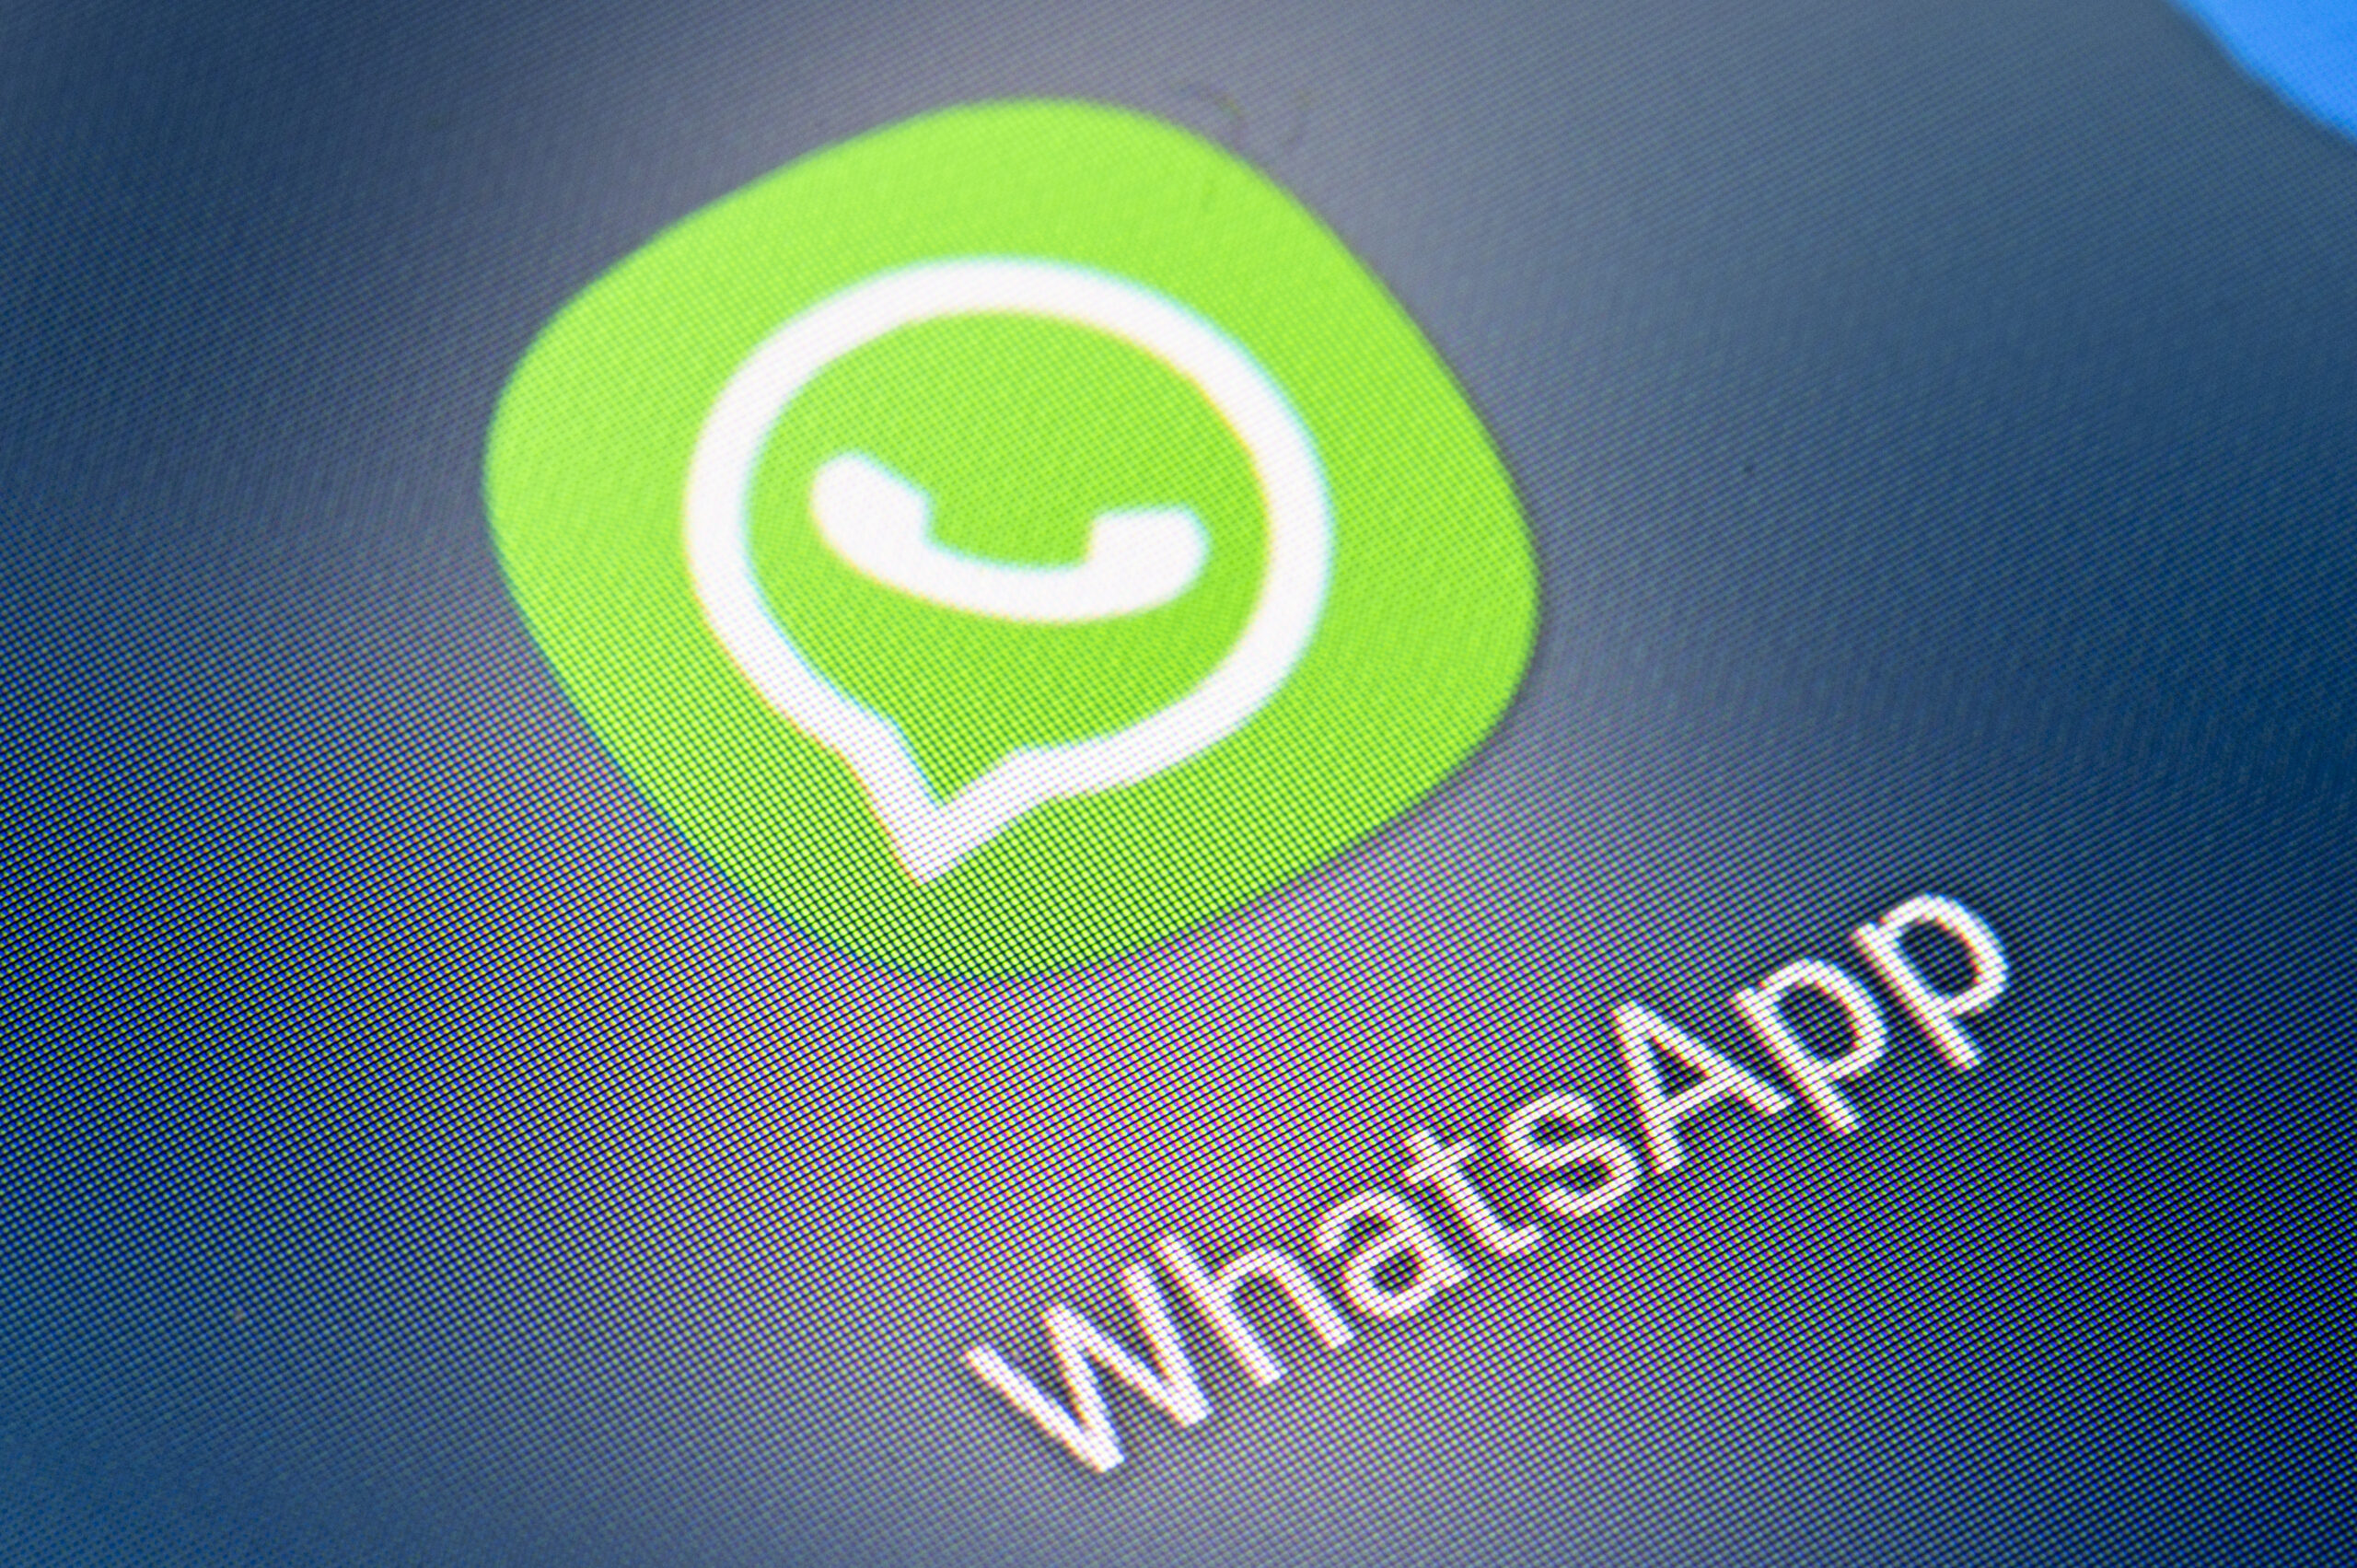 Whatsapp-Betrug: Senior überweist angeblichen Sohn Geld – Polizei sperrt Konto